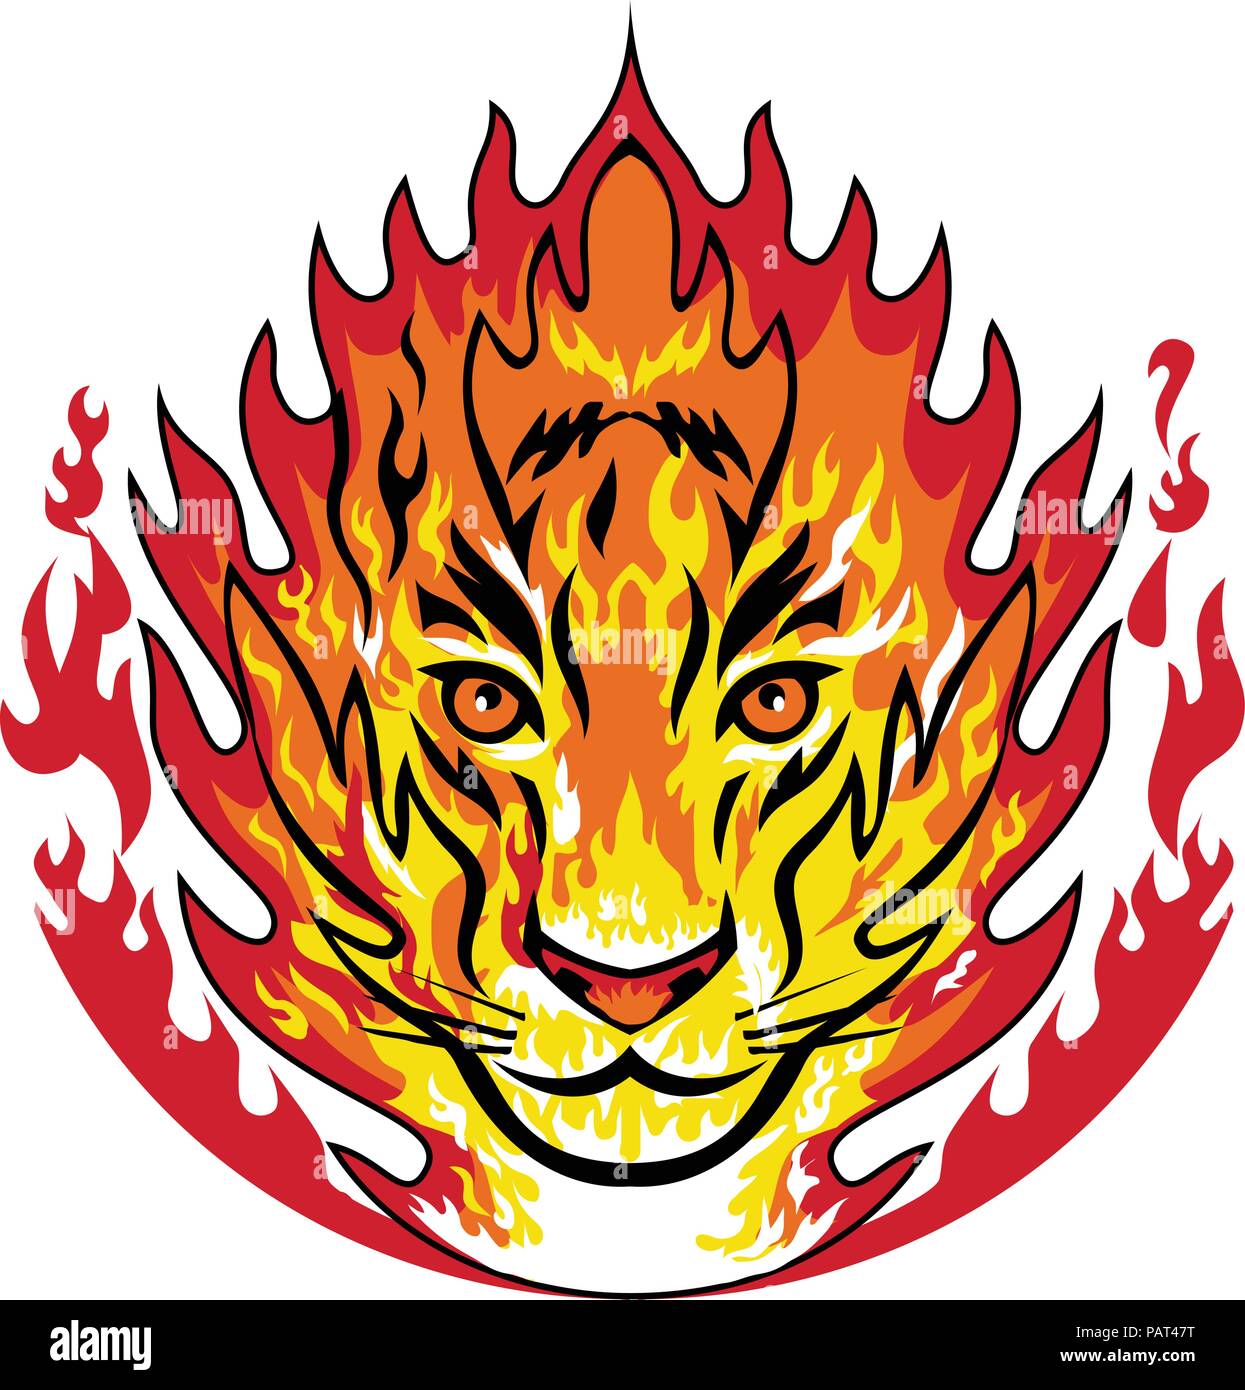 Maskottchen Symbol Abbildung: Flaming Kopf von einem Tiger oder große große Katze auf Brand in Flammen von vorne auf dem isolierten Hintergrund betrachtet im Retro-Stil eingerichtet Stock Vektor